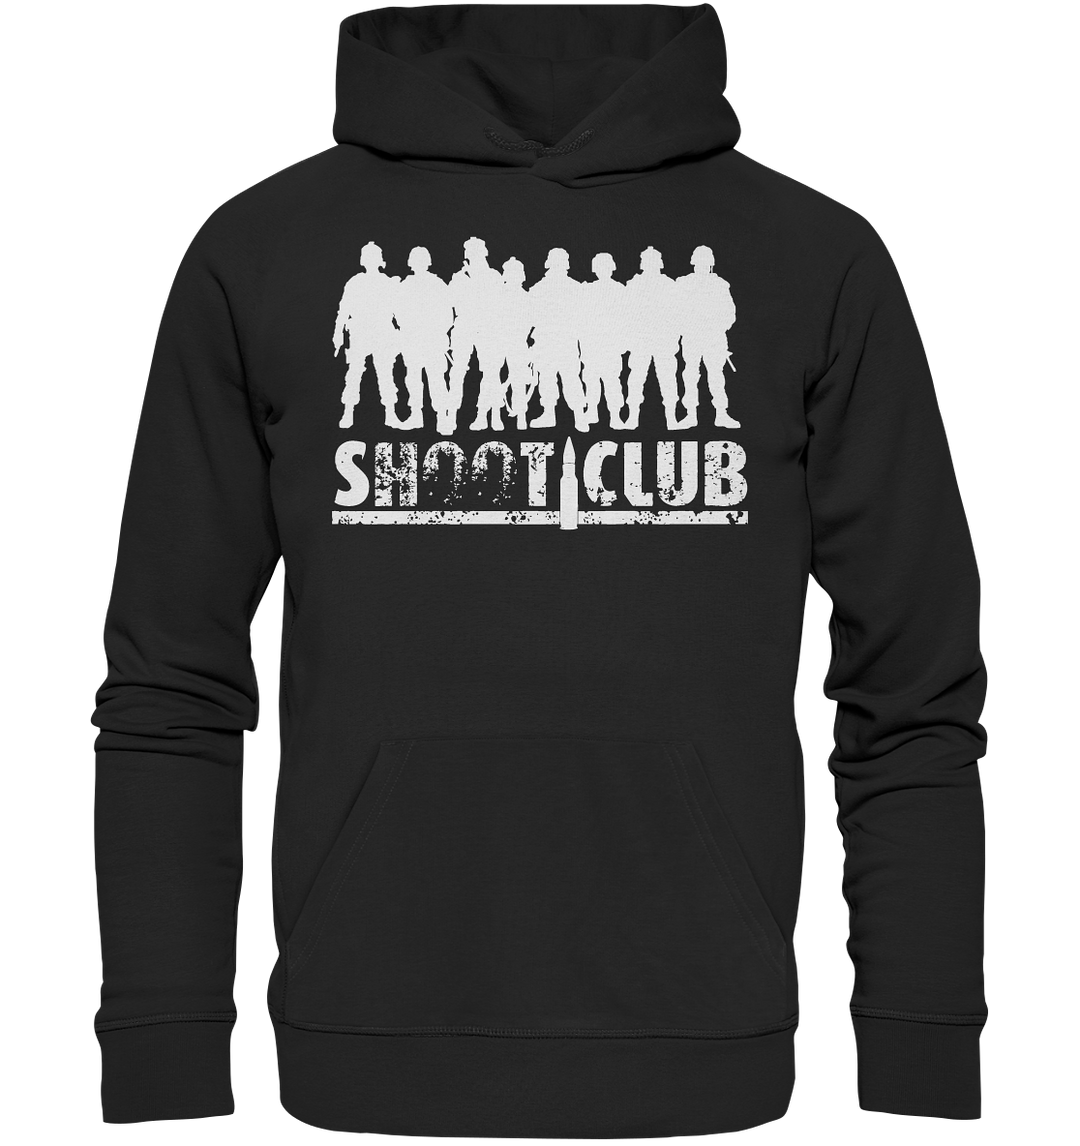 "Shoot Club Soldiers" - Premium Unisex Hoodie